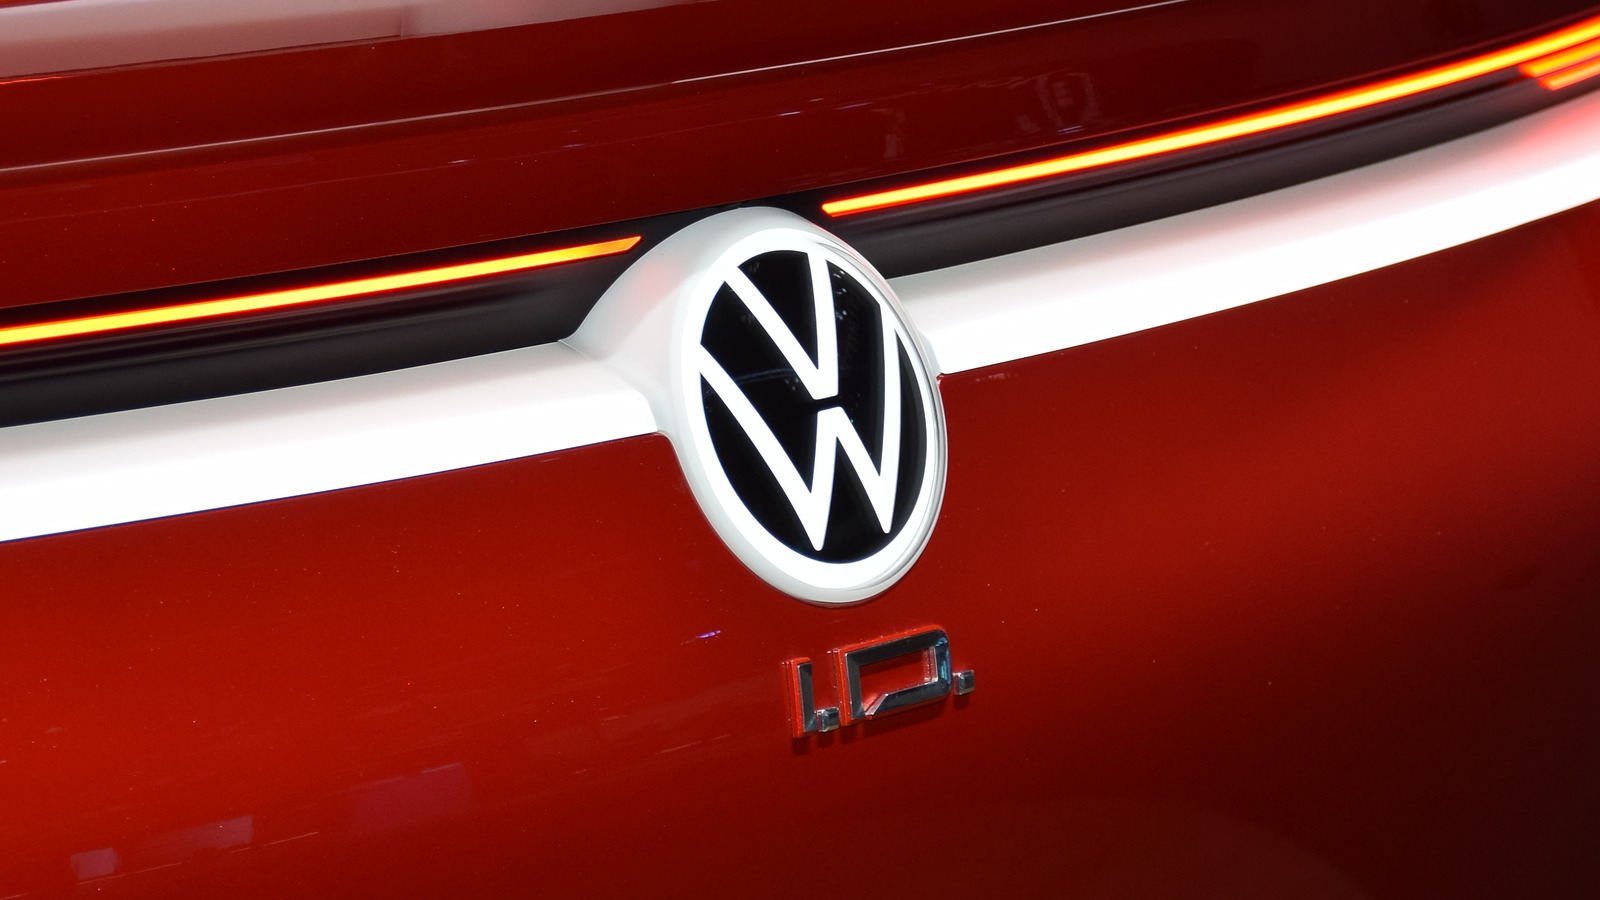 La batería de estado sólido para vehículos eléctricos de Volkswagen se muestra prometedora en las pruebas iniciales